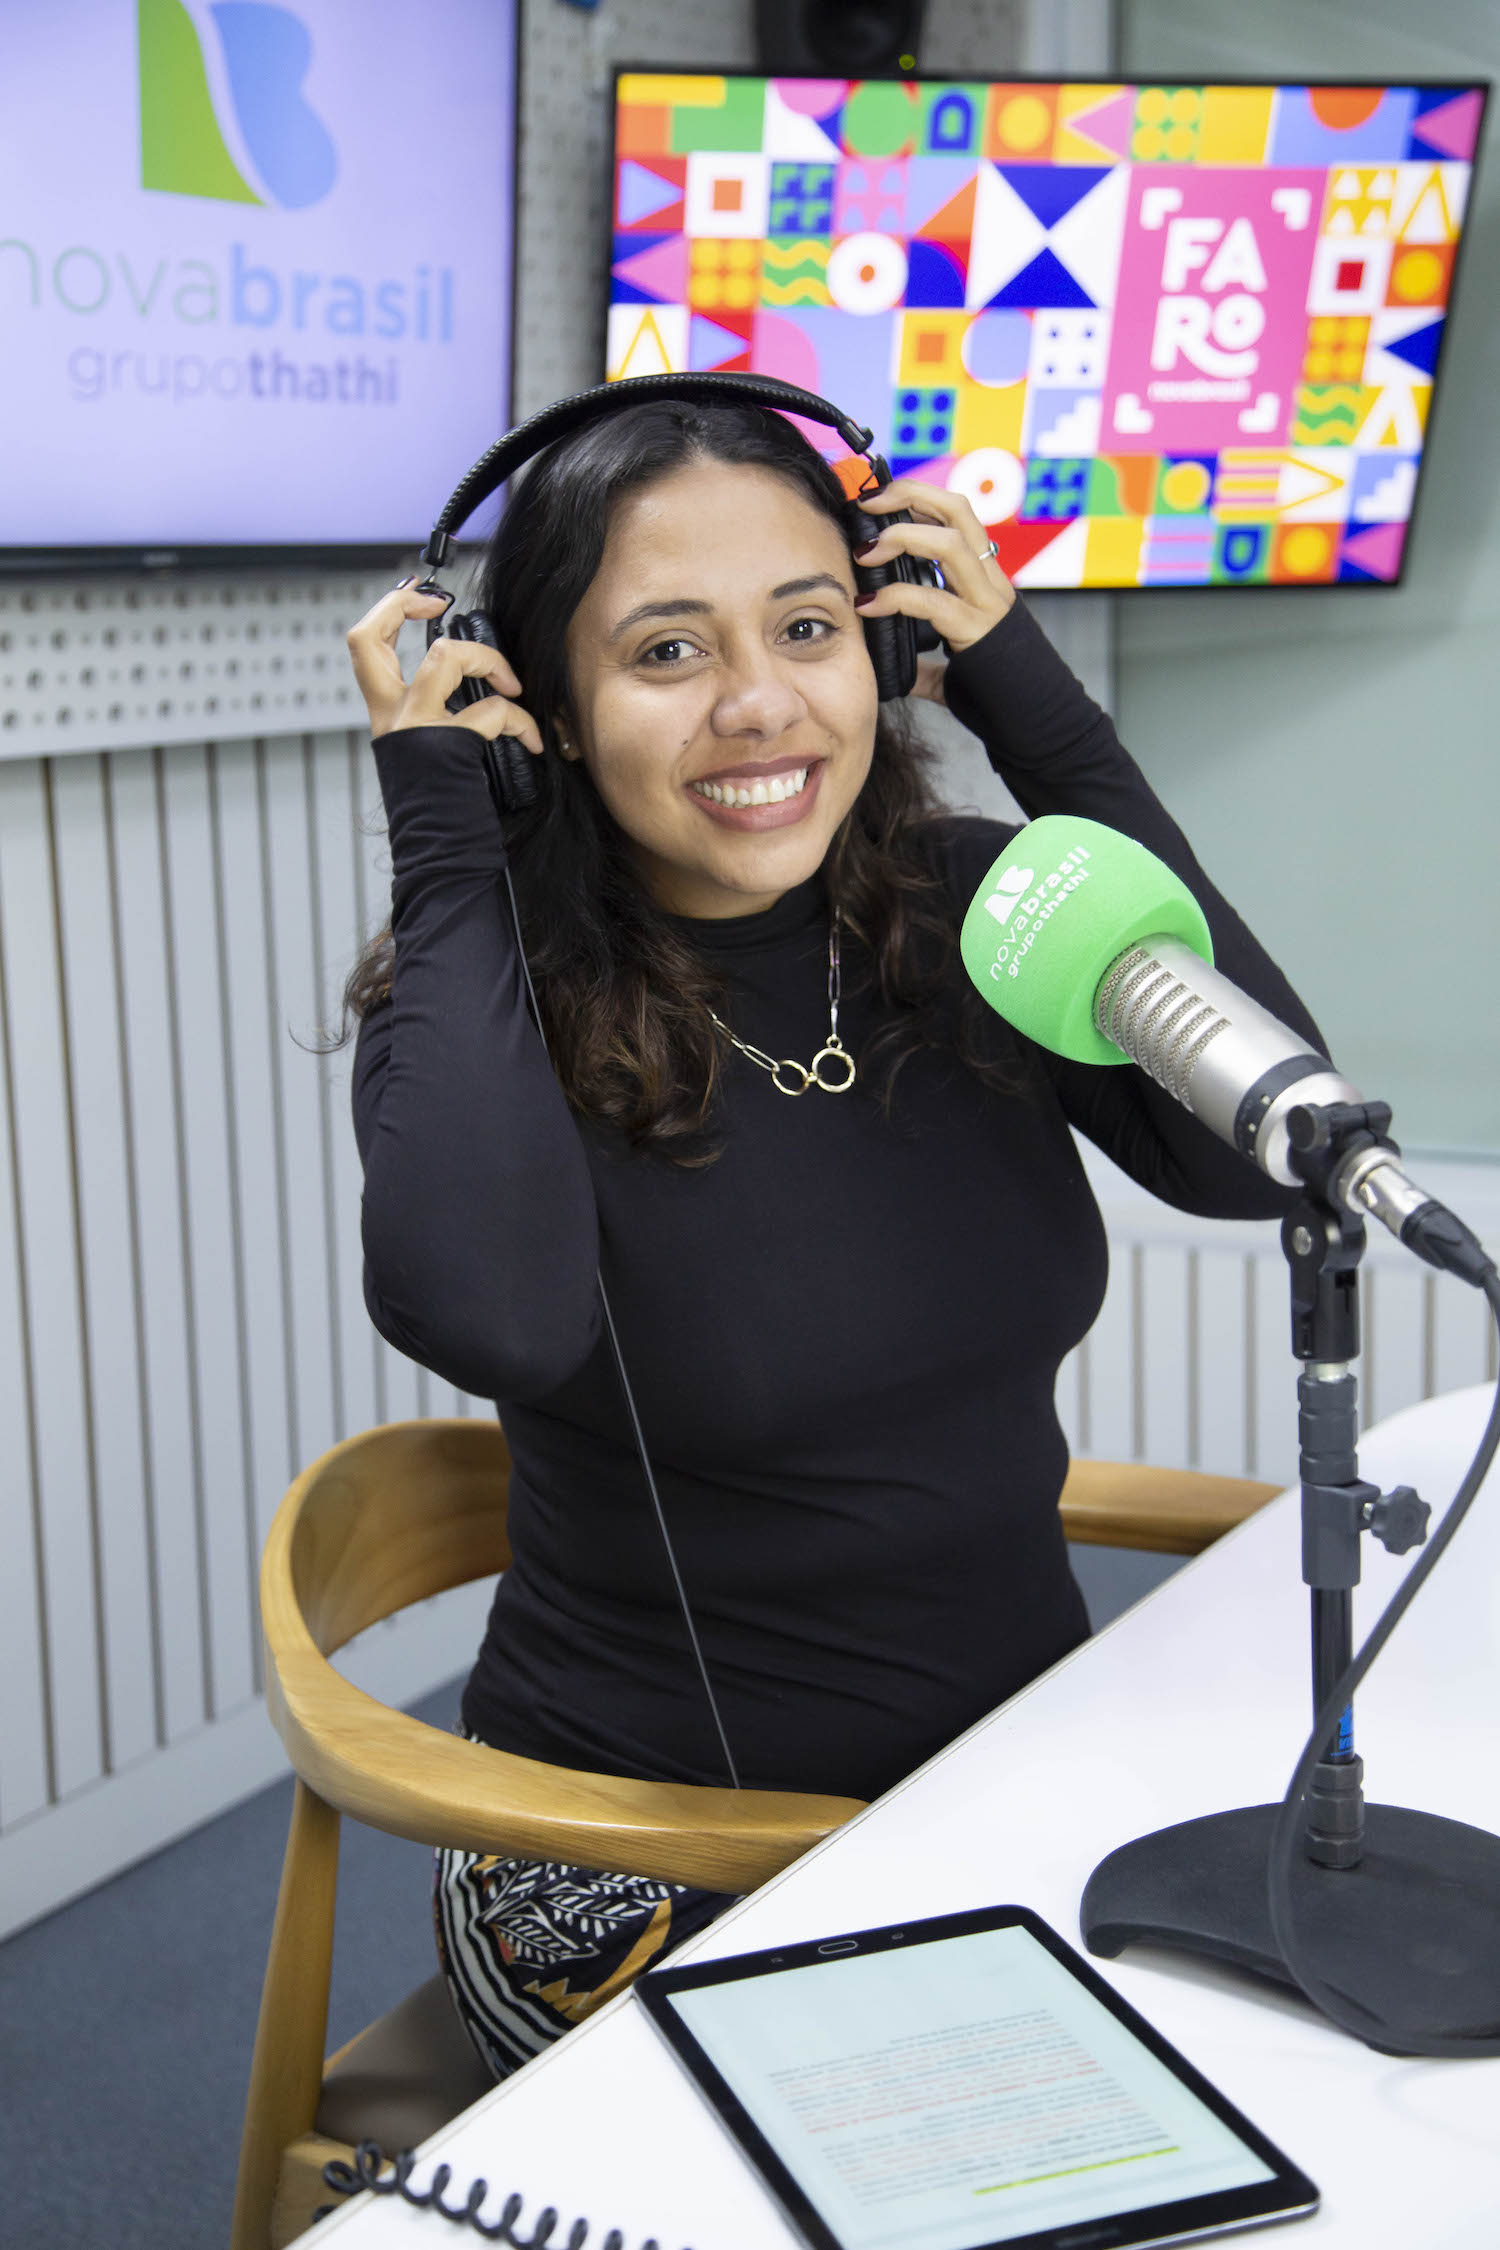 Fabiane Pereira, jornalista musical, em seu estúdio na rádio Nova Brasil FM